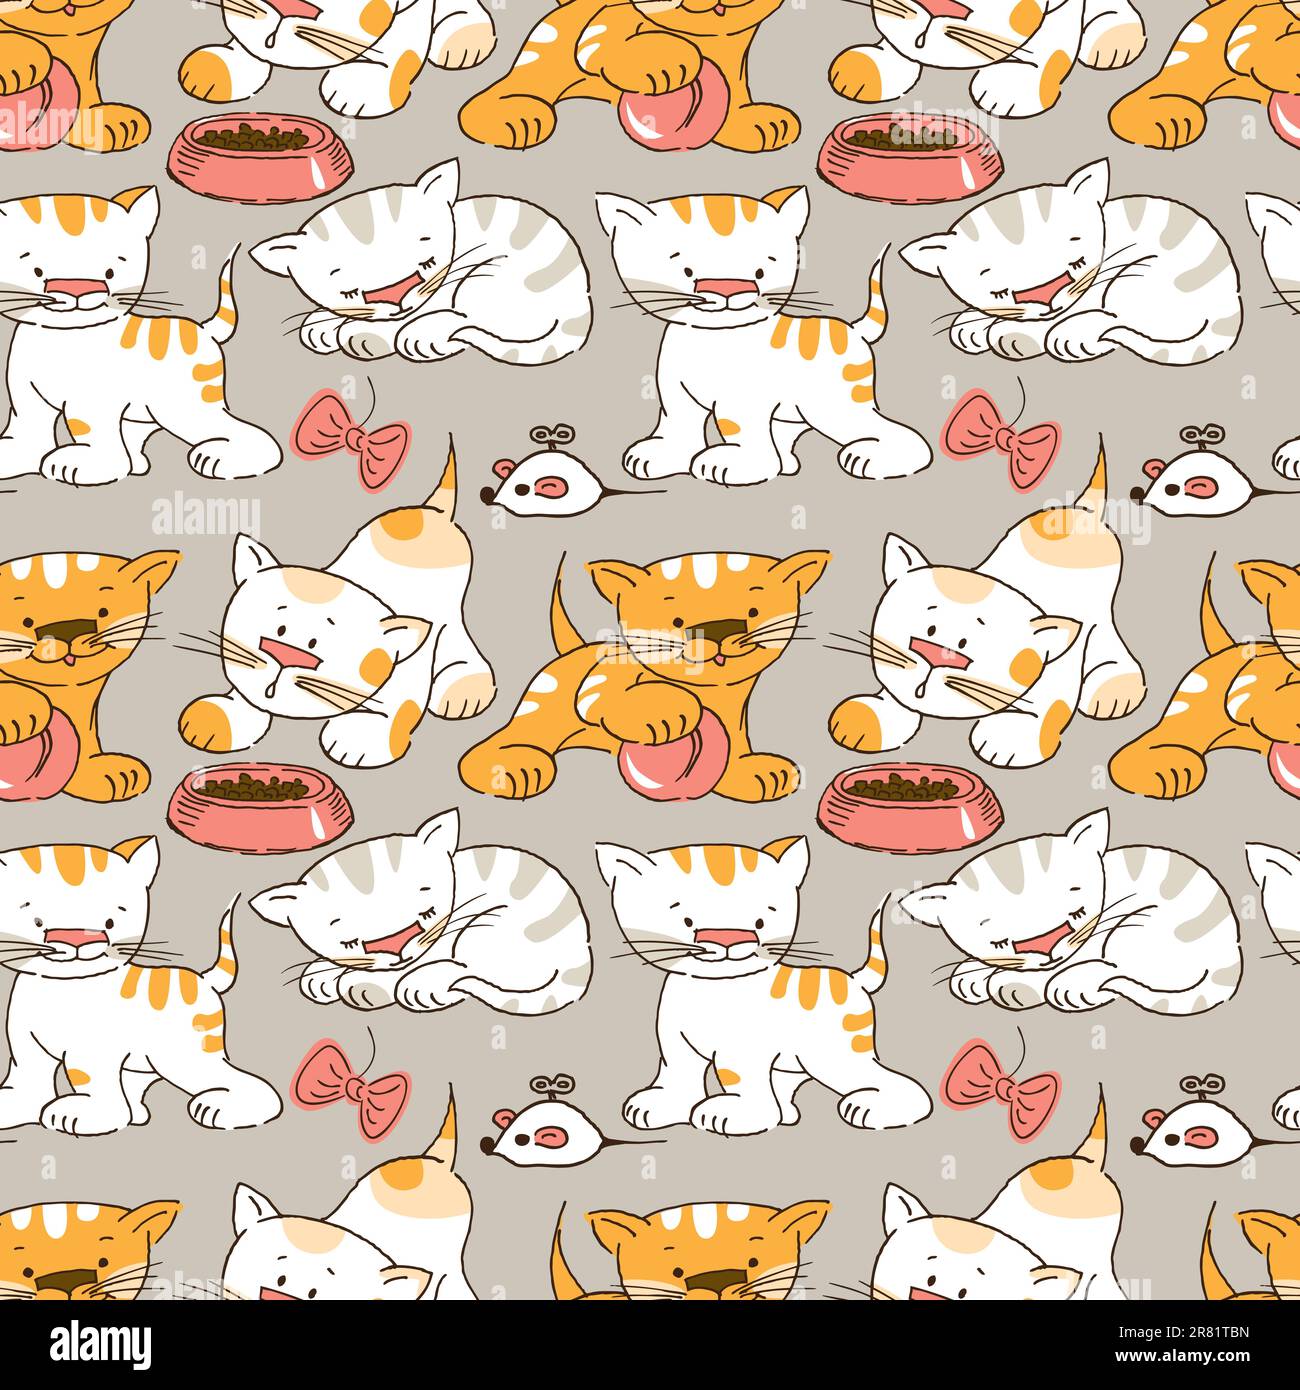 Seamless pattern -funny cartoon kitten. Stock Vector